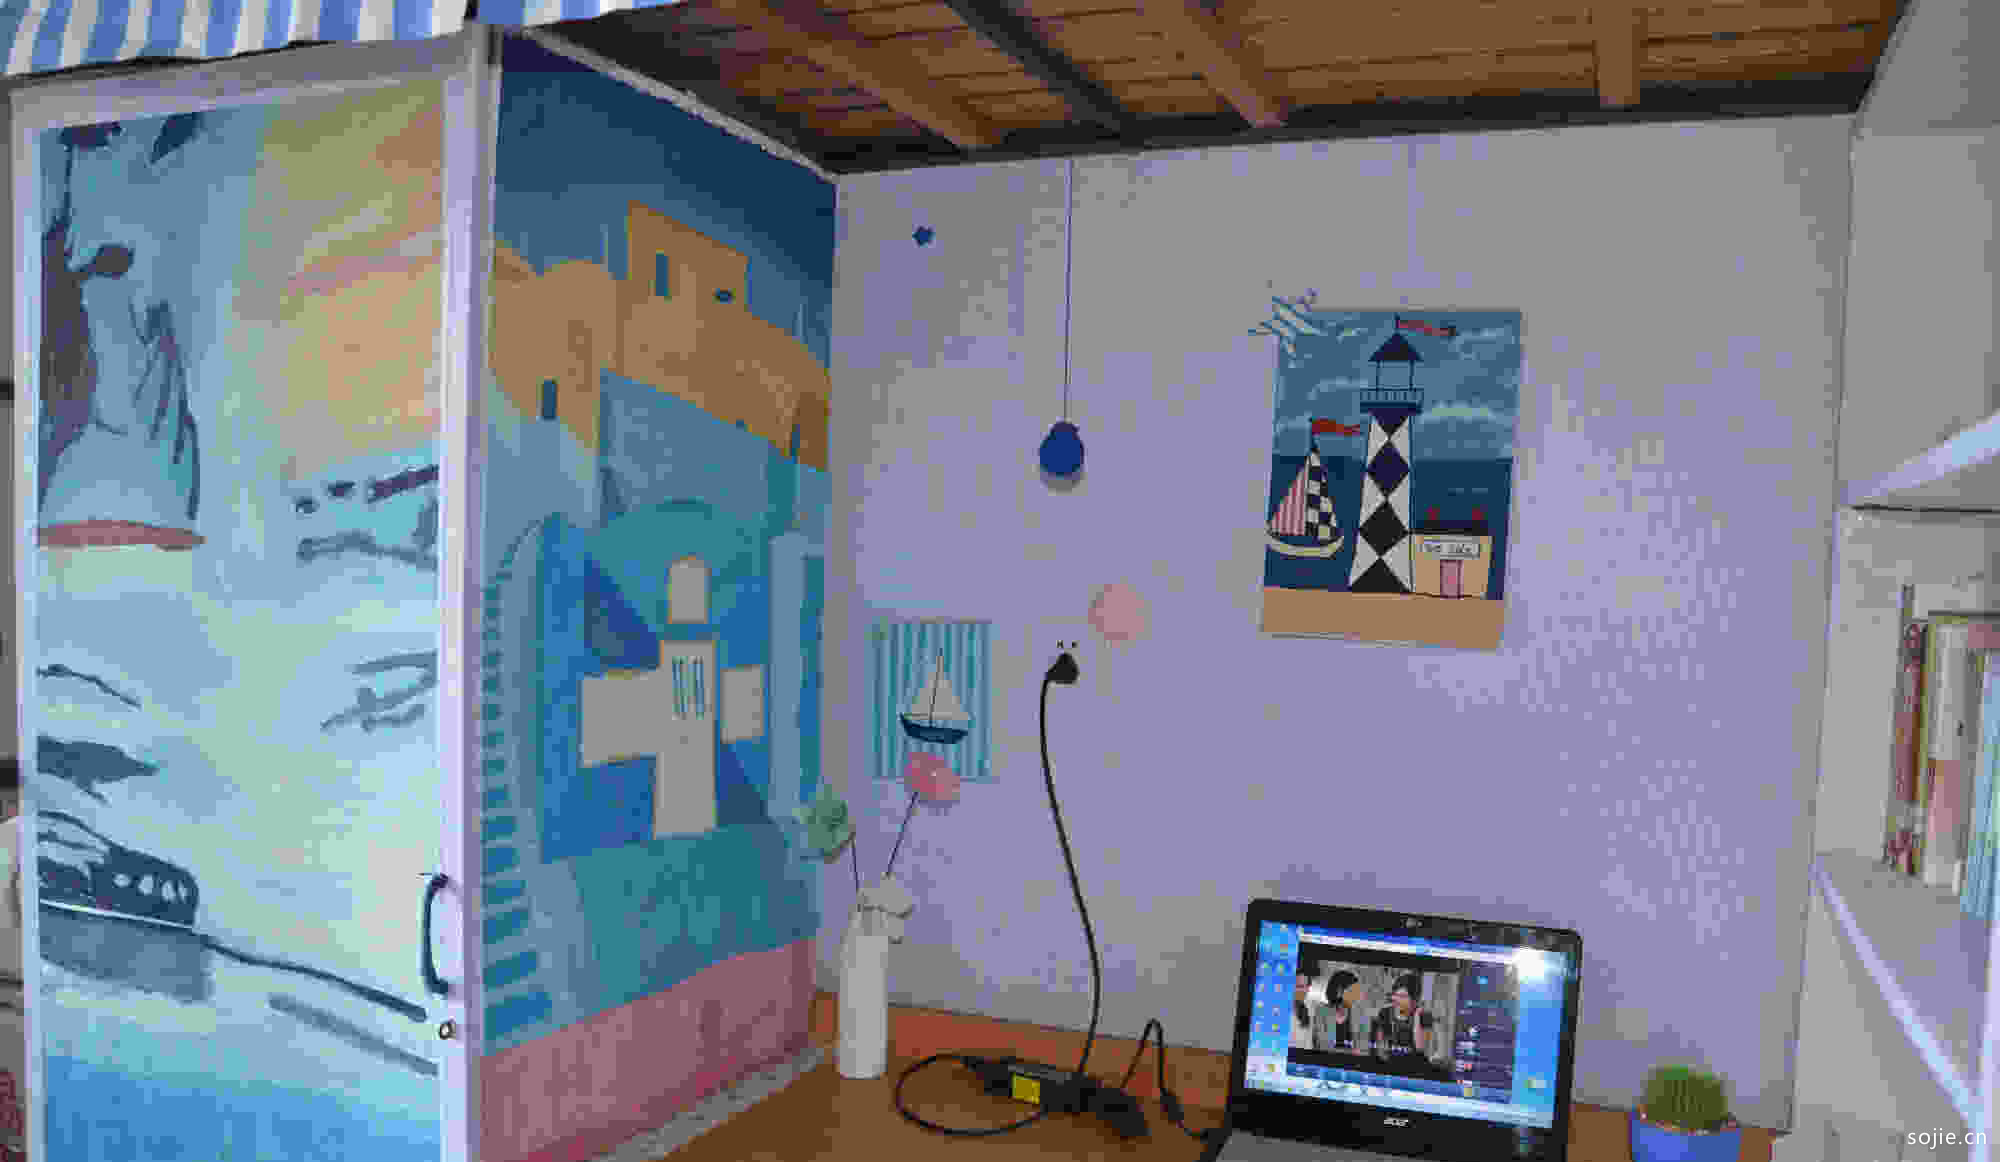 5款大学寝室布置设计图片 学生寝室室内文化布置装饰效果图